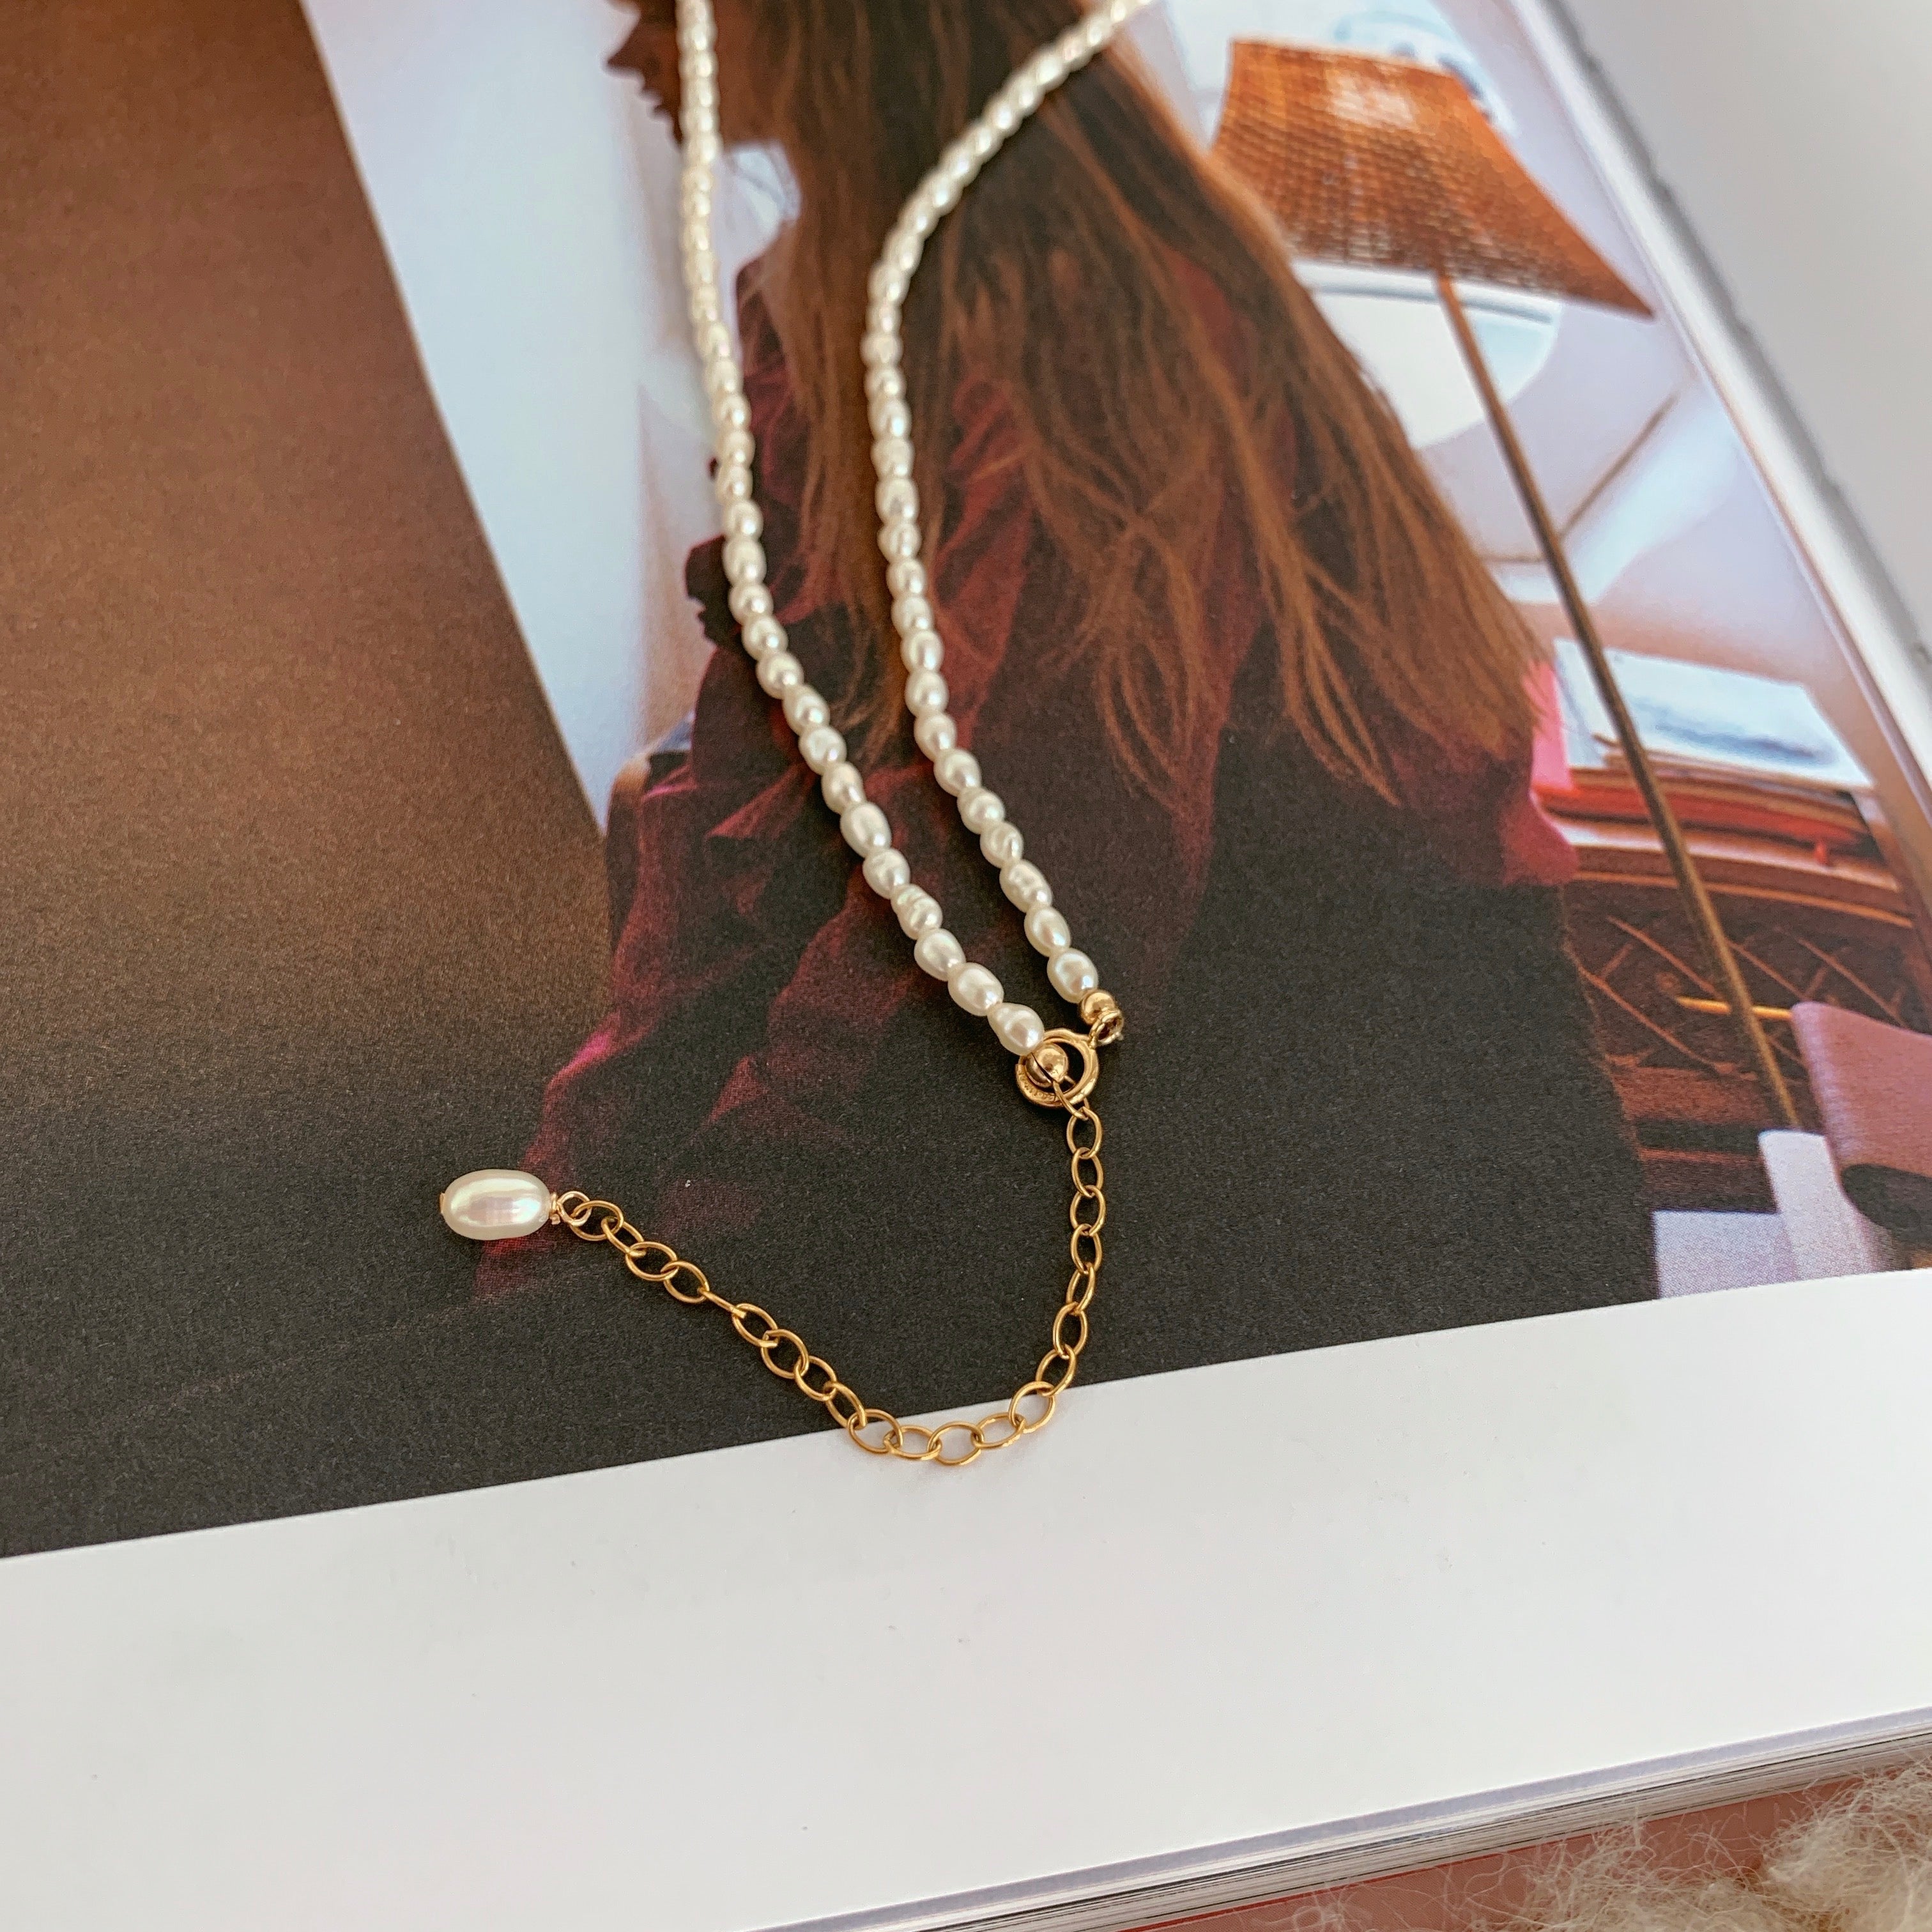 Original Design Natural Millet Pearl Necklace 14K Gold Clad Handmade Choker